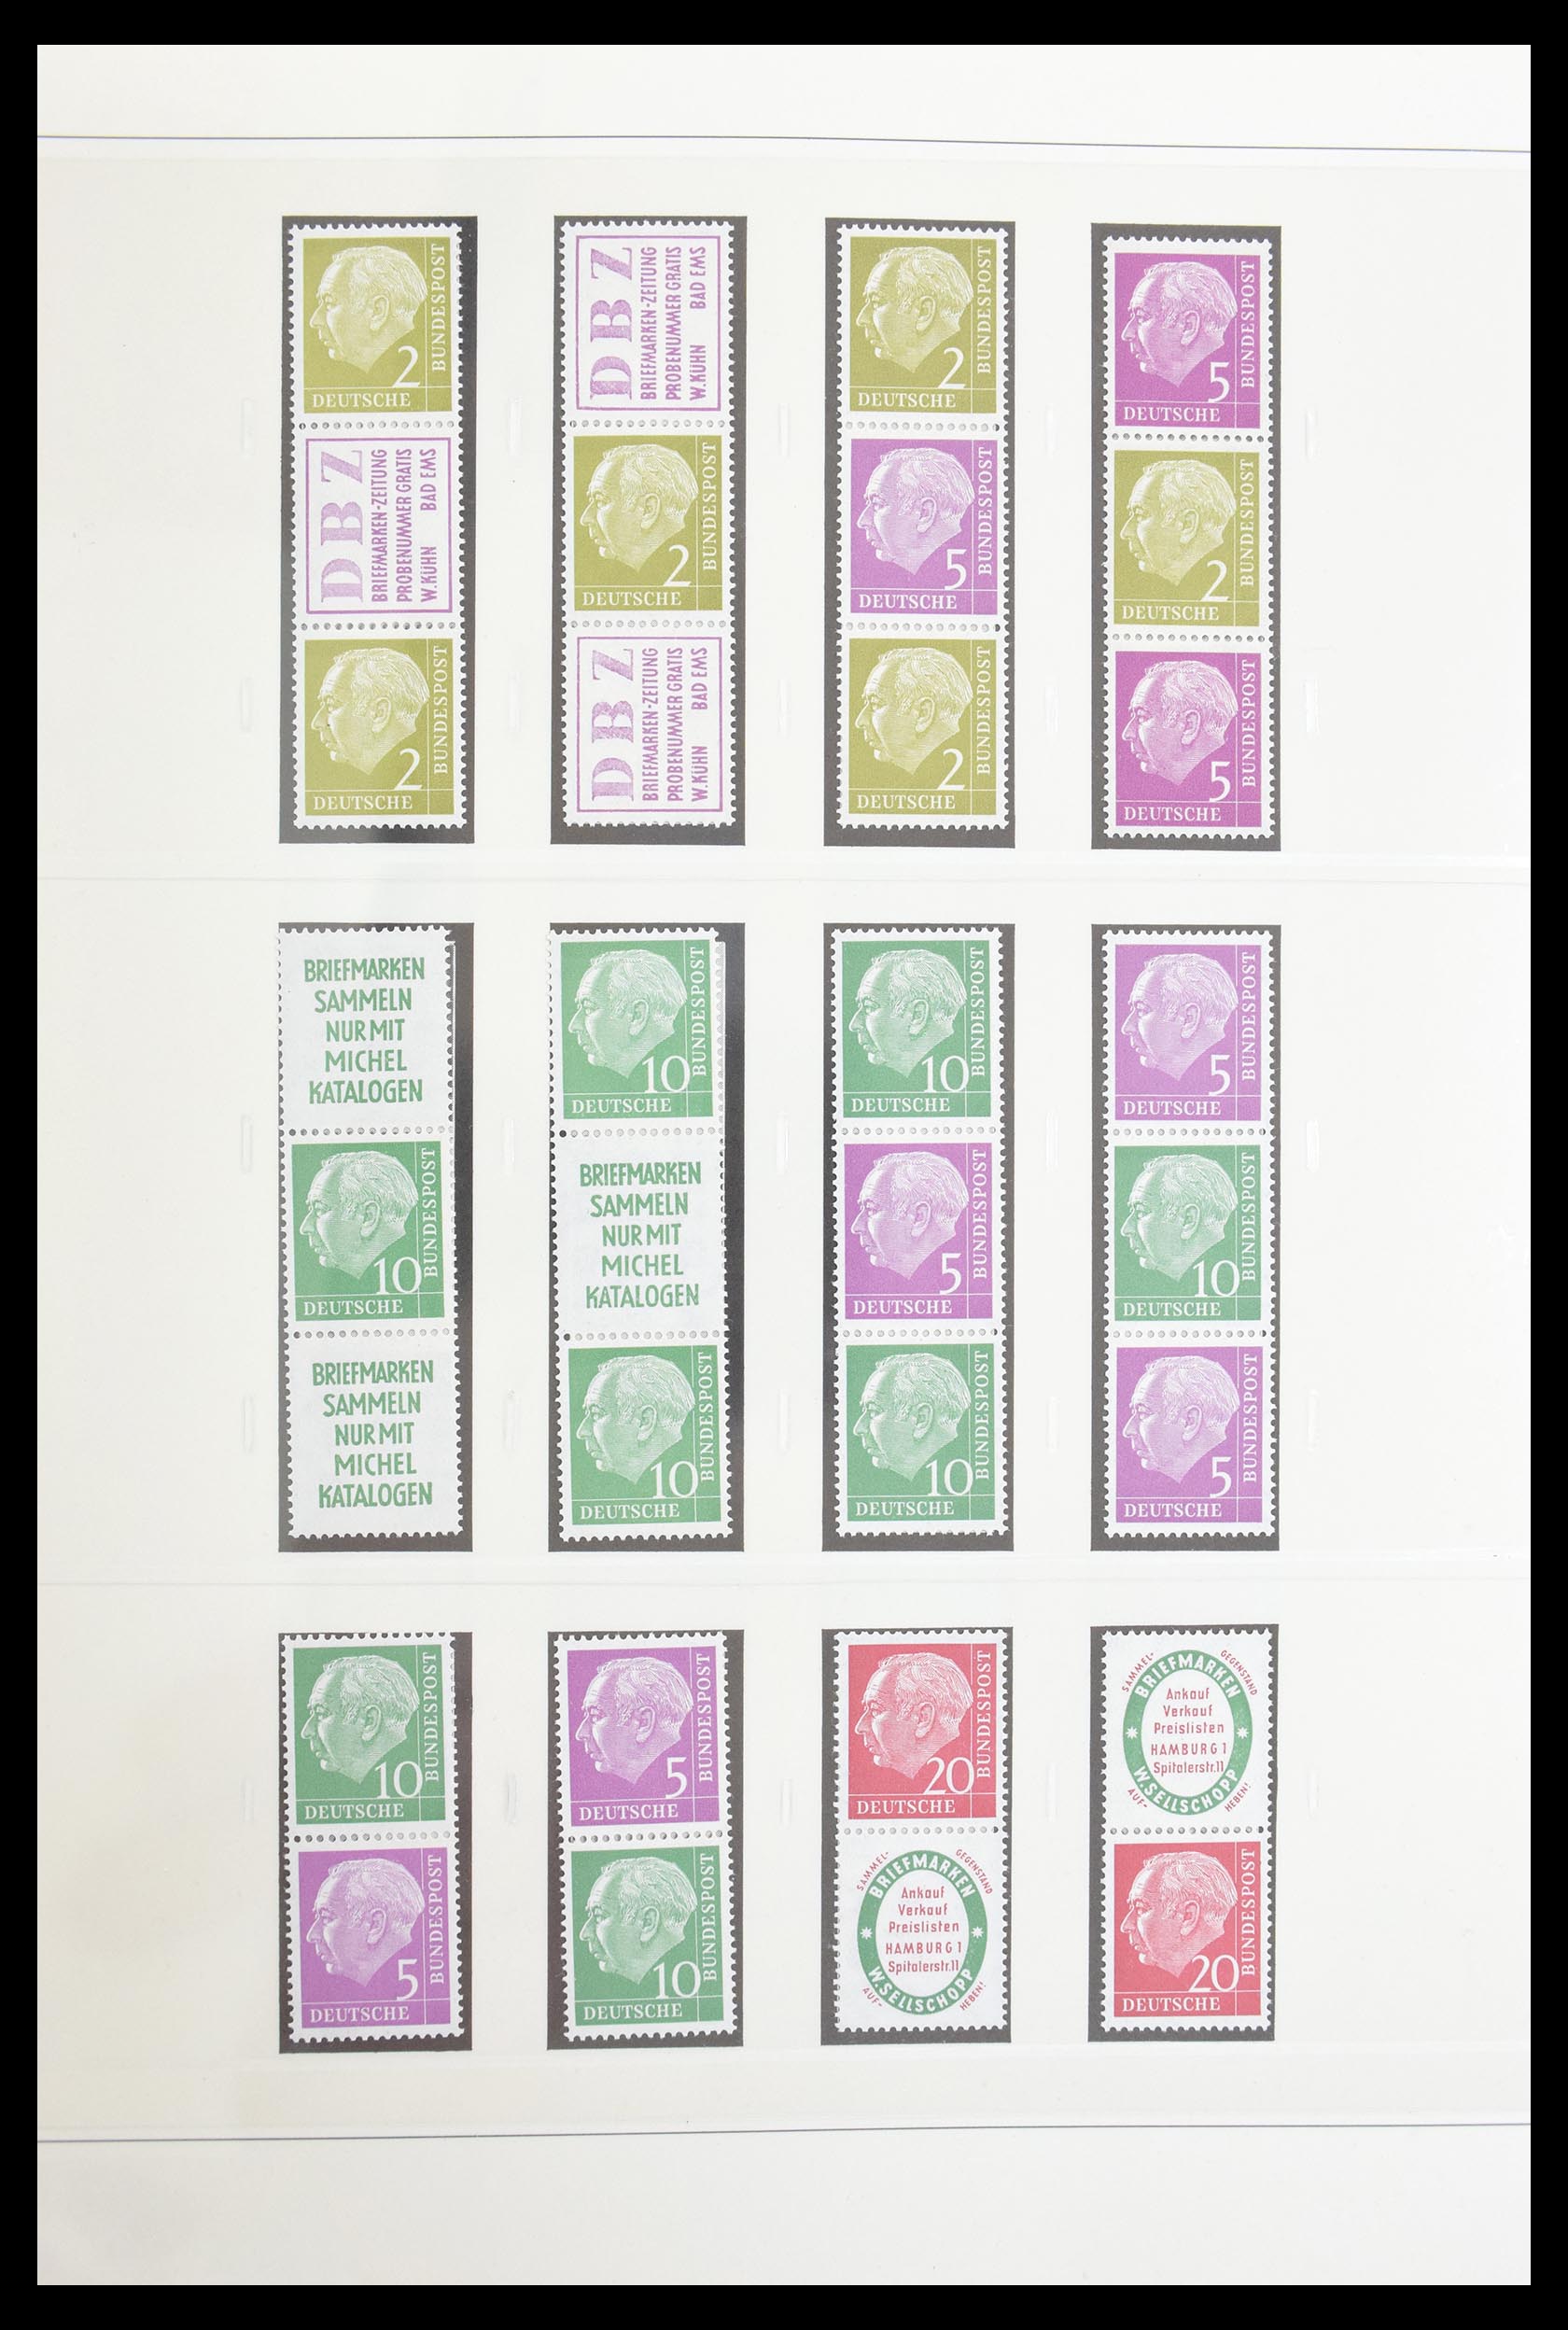 30605 004 - 30605 Bundespost combinaties 1951-1974.